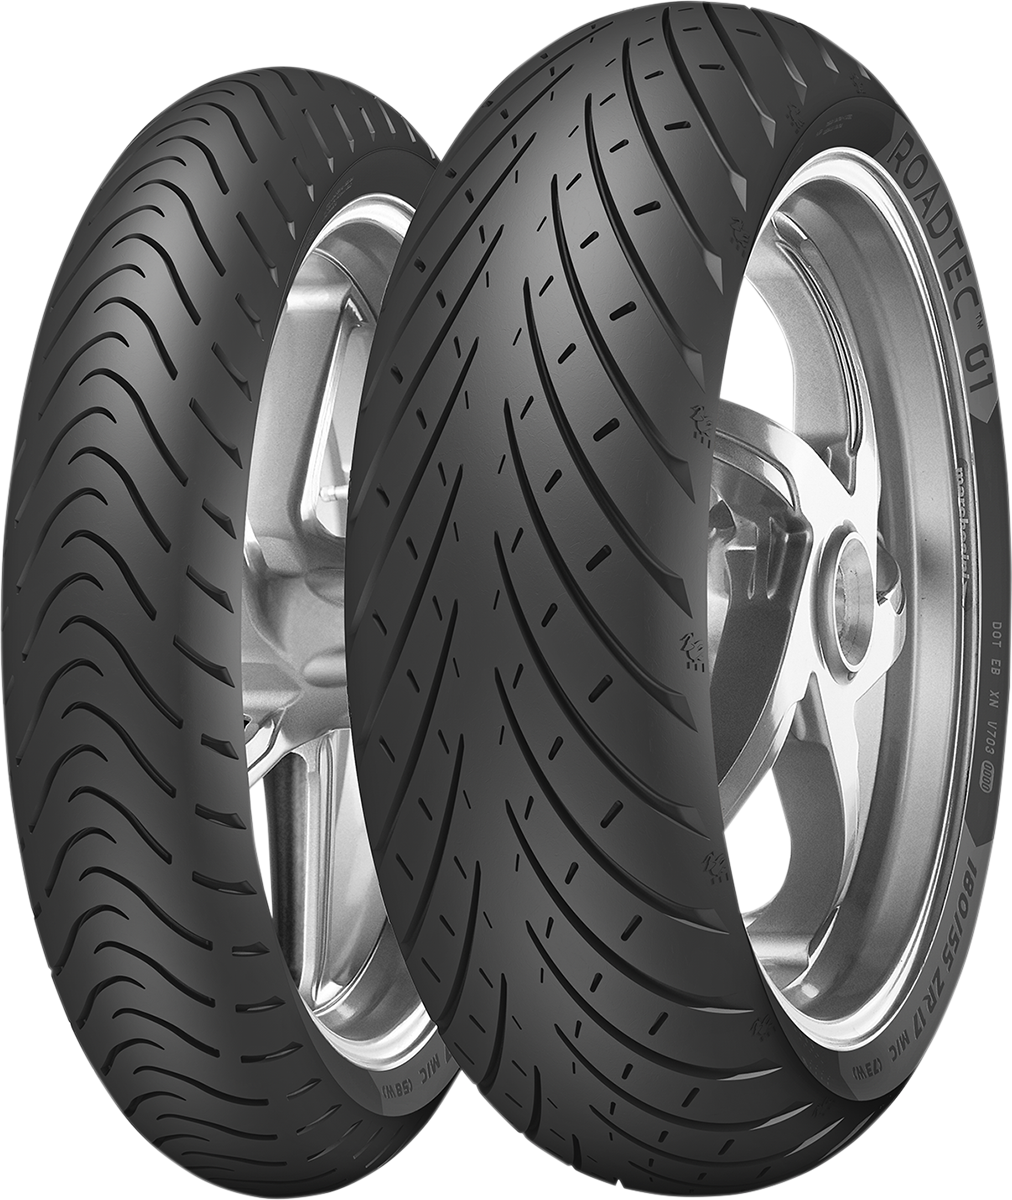 Tire - Roadtec 01 - 100/90-18 - 56V - Lutzka's Garage